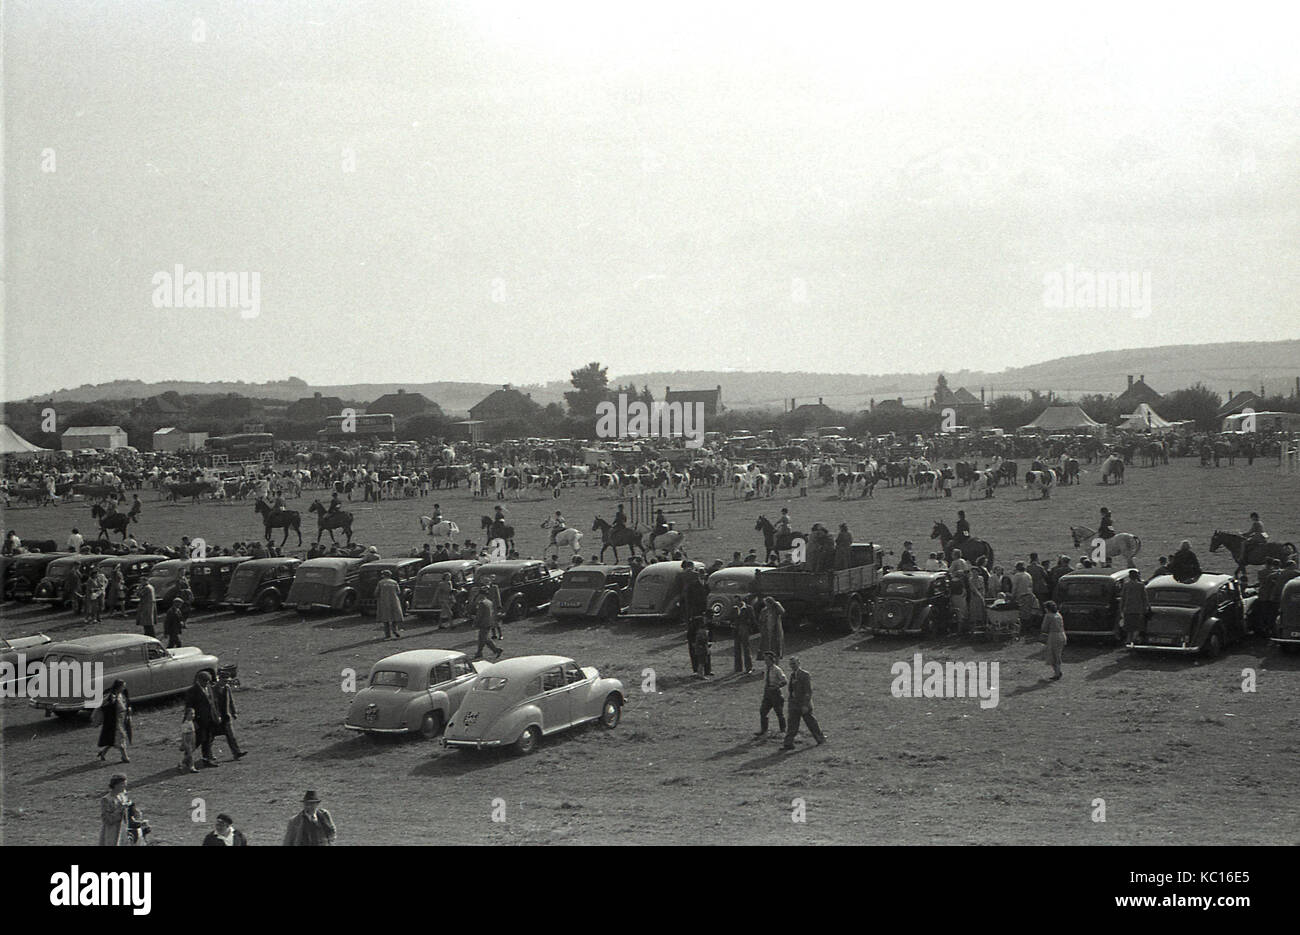 In den 1950er Jahren standen Autos der damaligen Zeit am Rande des Paradegeldes auf der Bucks County Show in Buckinghamshire, England, Großbritannien. Stockfoto